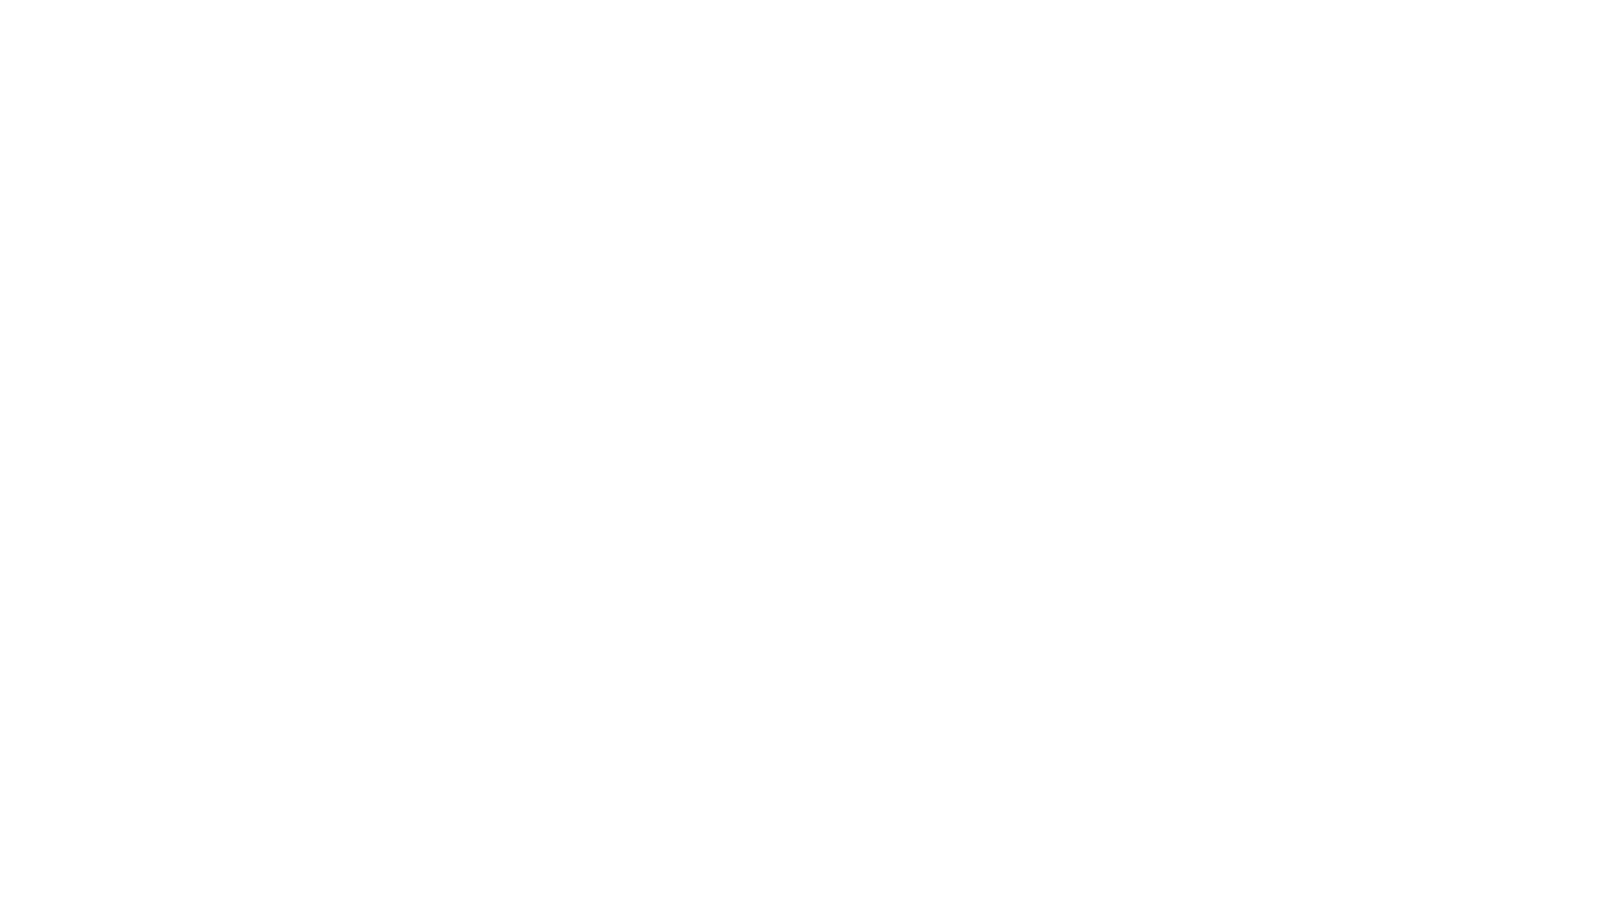 ＬＩＫＥ | ＣＯＭＭＥＮＴ | ＳＨＡＲＥ | ＳＵＢＳＣＲＩＢＥ

"টাচ অফ কেয়ার" এই স্লোগান নিয়ে এগিয়ে চলছে “ডক্টরস টিভি”
প্রচলিত ধারার গন্ডি পেরিয়ে  মননে, সৃজনে, নন্দনে সম্প্রচার চলছে  চিকিৎসা বিষয়ক চ্যানেল “ডক্টরস টিভি”। এই প্রয়াসে আমরা “ডক্টরস টিভি”কে সাজিয়েছি ভিন্ন থেকে ভিন্নতর আঙ্গীকে ও আধুনিক তরঙ্গ সজ্জায়।

স্বীয় মাতৃভূমি আর দেশমাতৃকার কৃষ্টি, মানব সেবার জীবনাচার ডাক্তার ও চিকিৎসা সংস্কৃতি। 

আকাশ সংস্কৃতিকে আমরা ধারণ করেছি অতলন্ত শ্রদ্ধায়। কেননা আমাদের এই  পদযাত্রায় “ডক্টরস টিভি” সম্প্রচার করছে সমগ্র বাংলাদেশে এবং এশিয়া, ইউরোপসহ বিশে^র অধিকাংশ দেশের বাংলাভাষাভাষী অঞ্চল গুলোতে। 

এই স্বপ্নযাত্রায় “ডক্টরস টিভি” শুধু হাসপাতালের গন্ডিতে সীমাবদ্ধ থাকেনি ।  পারিবারিক চিকিৎসা সংস্কৃতি, কর্পোরেট স্থাপনা, ব্যবসা প্রতিষ্ঠান, শিক্ষা প্রতিষ্ঠান গুলোতে, গ্রাম বাংলার কৃষক, সাধারন মানুষ এবং বাংলাদেশের  গৌরব মুক্তিযোদ্ধা,  যুব ও নারী সমাজের মাঝে, প্রিয় ডাক্তারদেরকে  সাথে  নিয়ে  চিকিৎসা  সংস্কৃতি ও স্বাস্থ্য সচেতনতা মূলক টক শো, প্রামাণ্যচিত্র  ও প্রামাণ্য প্রতিবেদন  বিন্যস্ত করতে চায় “ডক্টরস টিভি”।

মানব সেবায় এগিয়ে আসা প্রিয় যোদ্ধা,  আপনাকে অভিনন্দন ও অভিবাদন।

মানব সেবার অনিবার্য ও অন্যতম বিষয়  হলো চিকিৎসা । আপনি জেনে খুশি হবেন যে, আপনার প্রিয়  চিকিৎসা বিষয়ক টিভি চ্যানেল “ডক্টরস টিভি” তার নববিন্যাসে আপনাকে সঙ্গী করে সঙ্গে নিয়ে যেতে চায়  মানব সেবার চিকিৎসা  বিষয়ক সকল মাধ্যম গুলোতে। আমাদের ভাবনাটা একটু ভিন্ন ও বেশ বহুমাত্রিক। এদেশে সত্যিই মানব সেবার মহান কাজটি এগিয়ে নিয়ে যাচ্ছেন ডাক্তাররাই। এই যে বিশাল চিকিৎসা ক্যানভাস, আকাশ সংস্কৃতিতে যথাযোগ্য স্থান আপনাদেরই দাবী। আমরাই  প্রথম ভাবছি “ডক্টরস টিভি” শুধু ডাক্তারদেরকে সাথে রাখবে, সাথে থাকবে এবং একসাথে এগিয়ে যাবে।

“ডক্টরস টিভি” ও  ডাক্তারদের সমন্বিত  যোগবন্ধনে আমরা সবাই উপকৃত হবো। এই পরিপূর্নতা থেকে জন্ম হবে আমাদের সময়ের শুদ্ধ চিকিৎসা চিন্তার আরও একটি অভিমুখ।

#Doctors_tv 
#doctors_health_tips 
#Doctors_tips 
#health_tips 
#doctor_health_tips 
#ডক্টরস_টিভি 
#ডাক্তারের_পরামর্শ 
#আরোগ্য 
#health_tips_bangla_video
 #bd_health_tips 
#all_health_tips 
#bangla_health_tips_2022 
#bangla_health_tips 
#women_health_tips
#medical_tipsbd 
#medical_tips 
#child_Good_health_tips 
#child_health_tips
#Adolescents_good_health_tips 
#Adolescents_health_tips
#Pregnant_mother_of_Good_health_tips 
#mother_Good_health_tips 
#স্বাস্থ্য_সচেতনতা_মূলক_টকশো